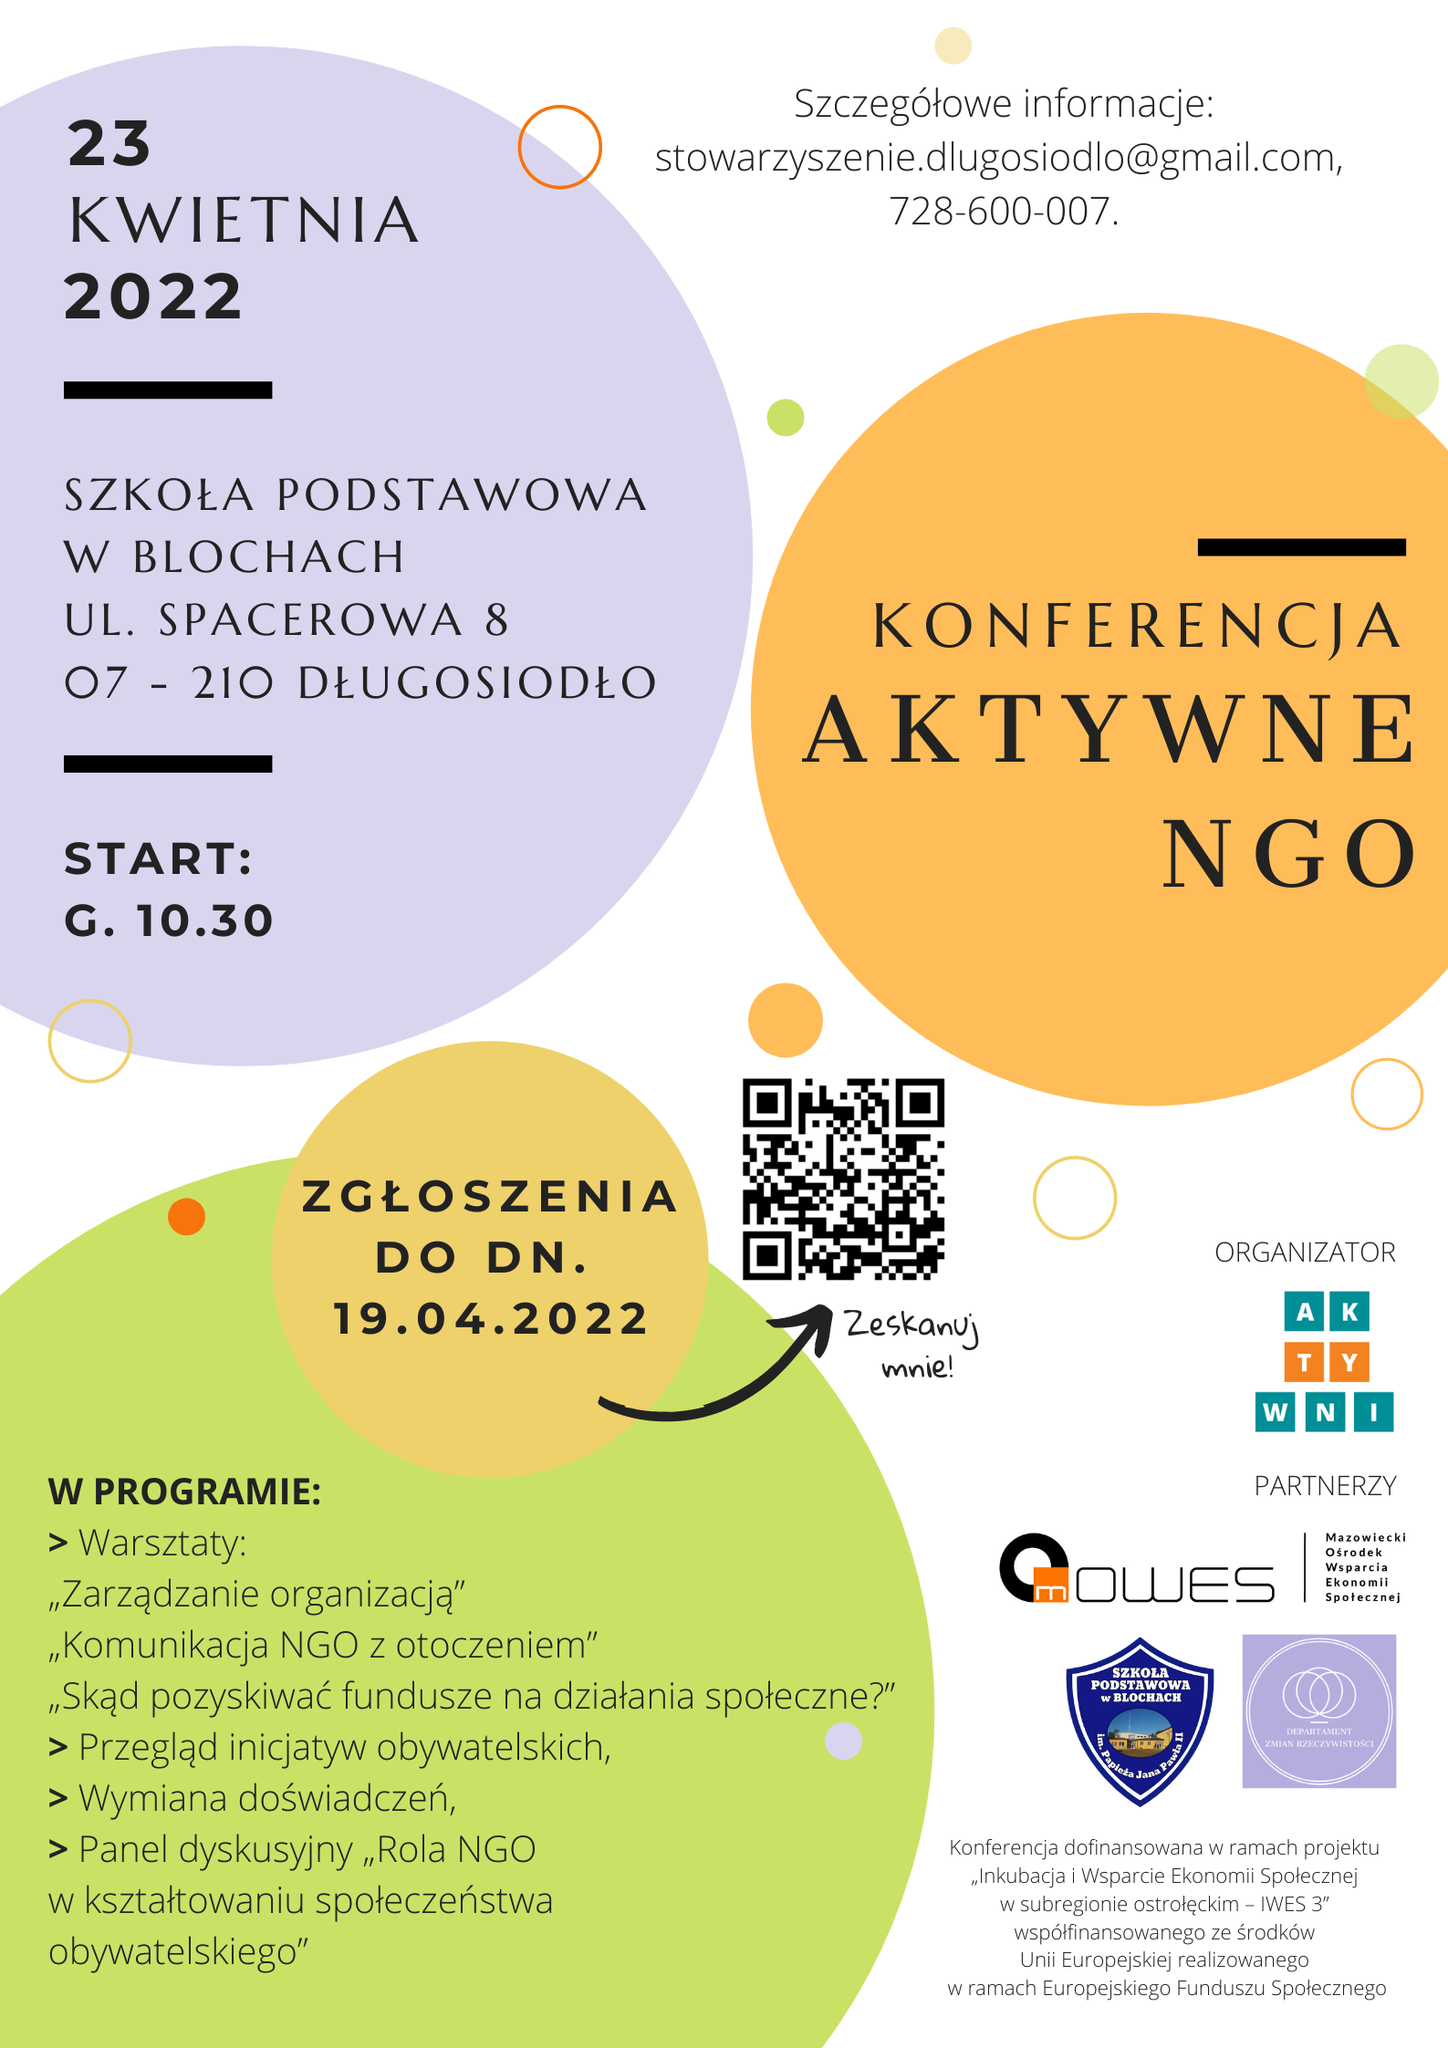 Plakat informacyjny o konferencji aktywne ngo w dniu 23 kwietnia w Długosiodle 